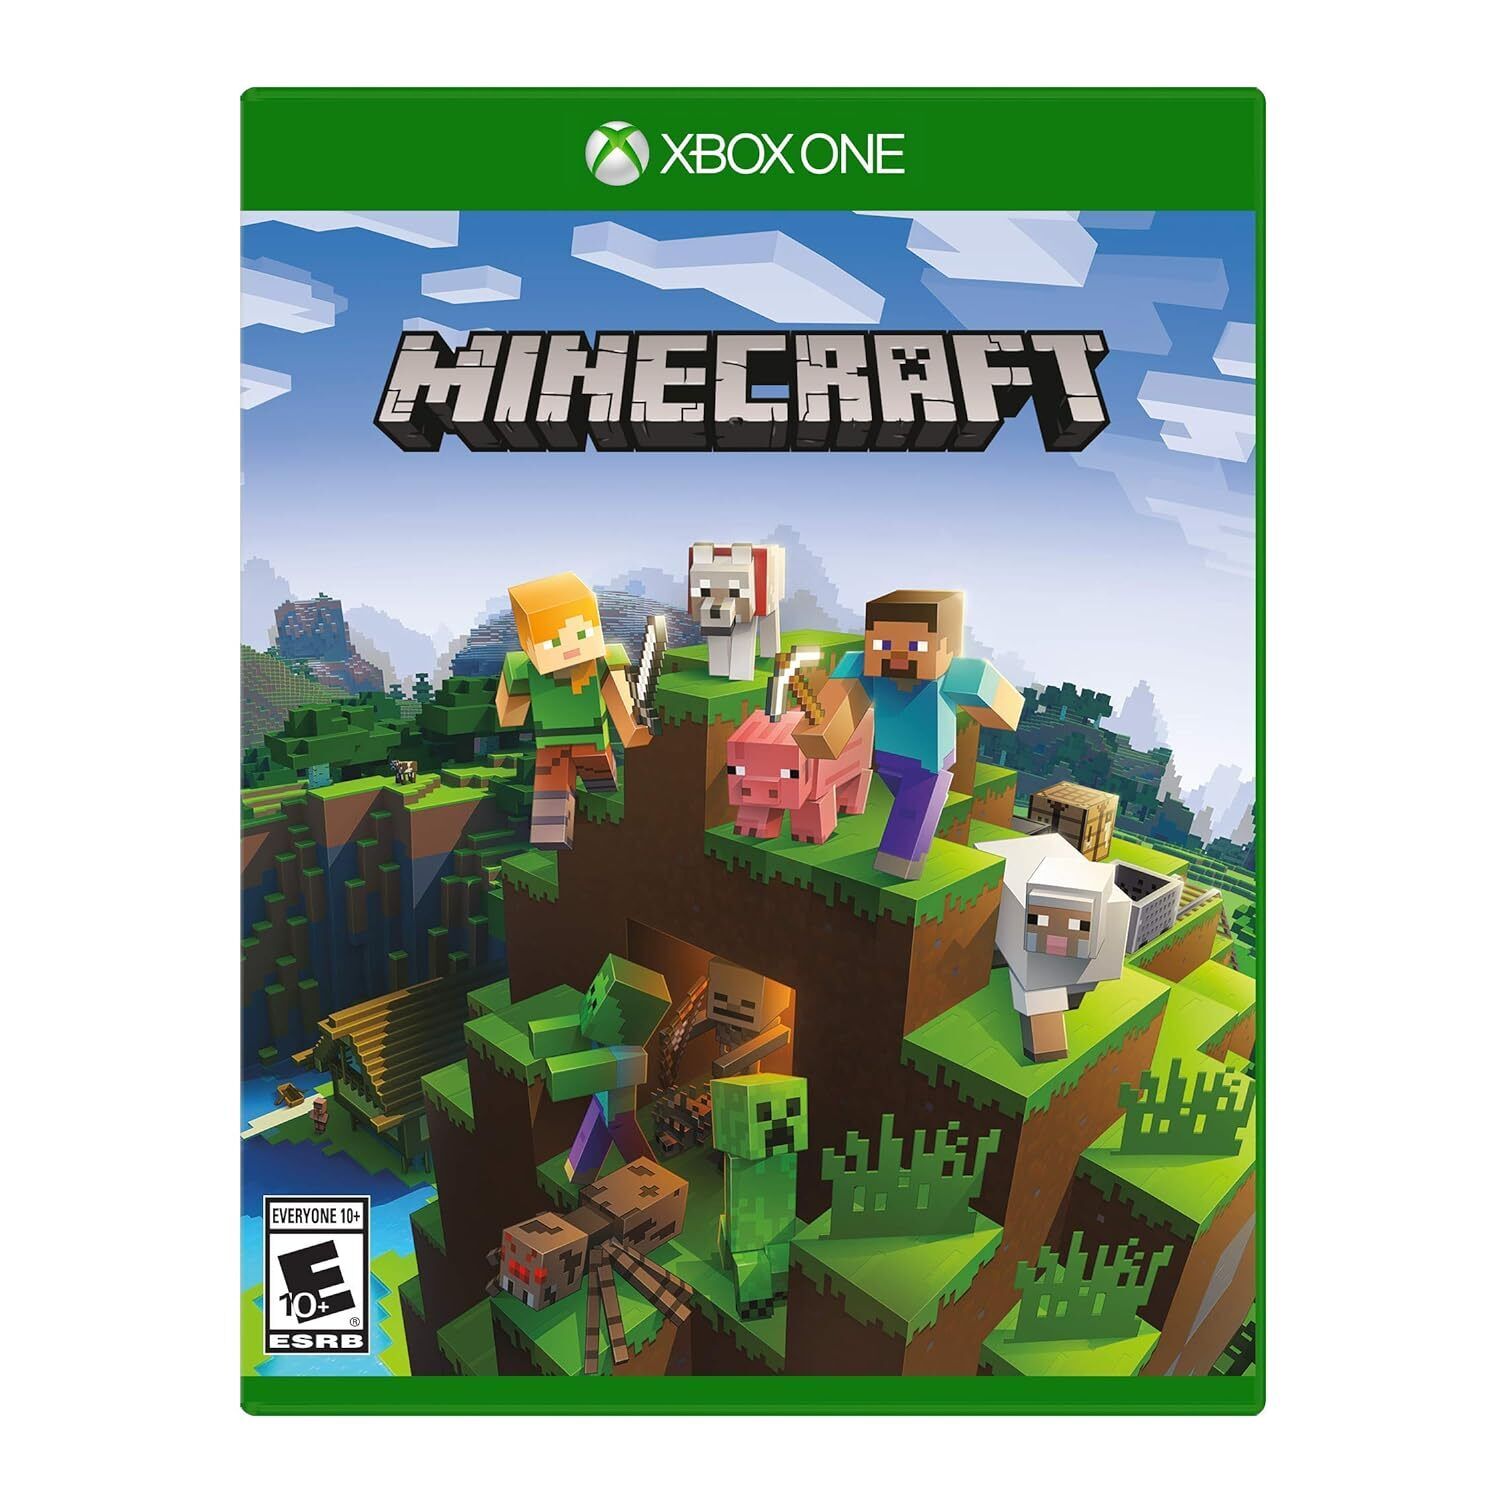 Awesome Minecraft � Xbox One on eBay